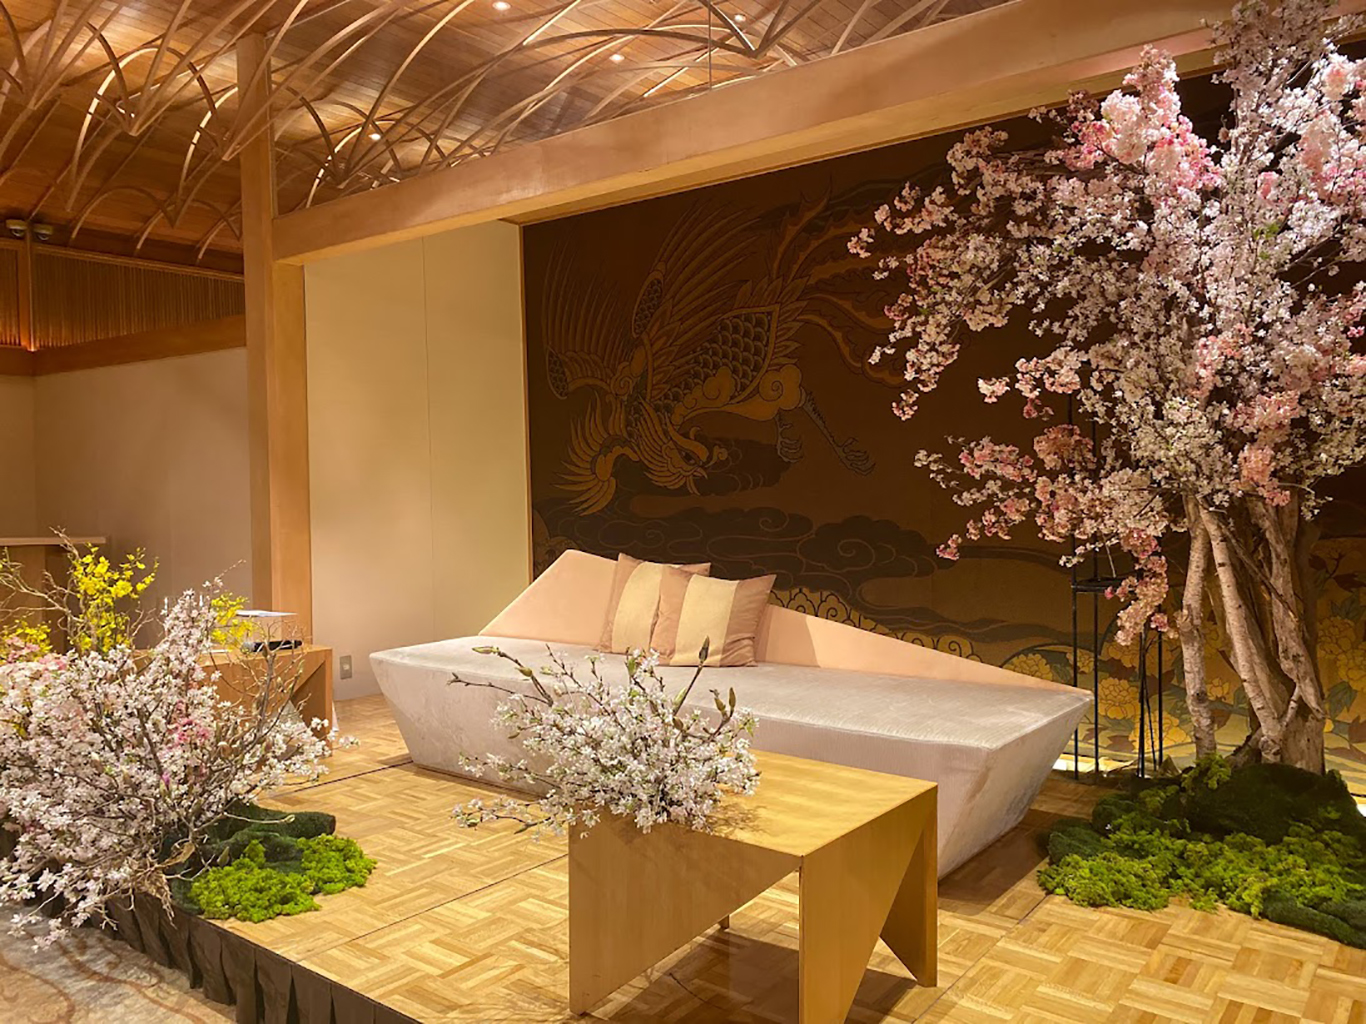 ソファスタイルで桜のコーディネートが素敵な空間